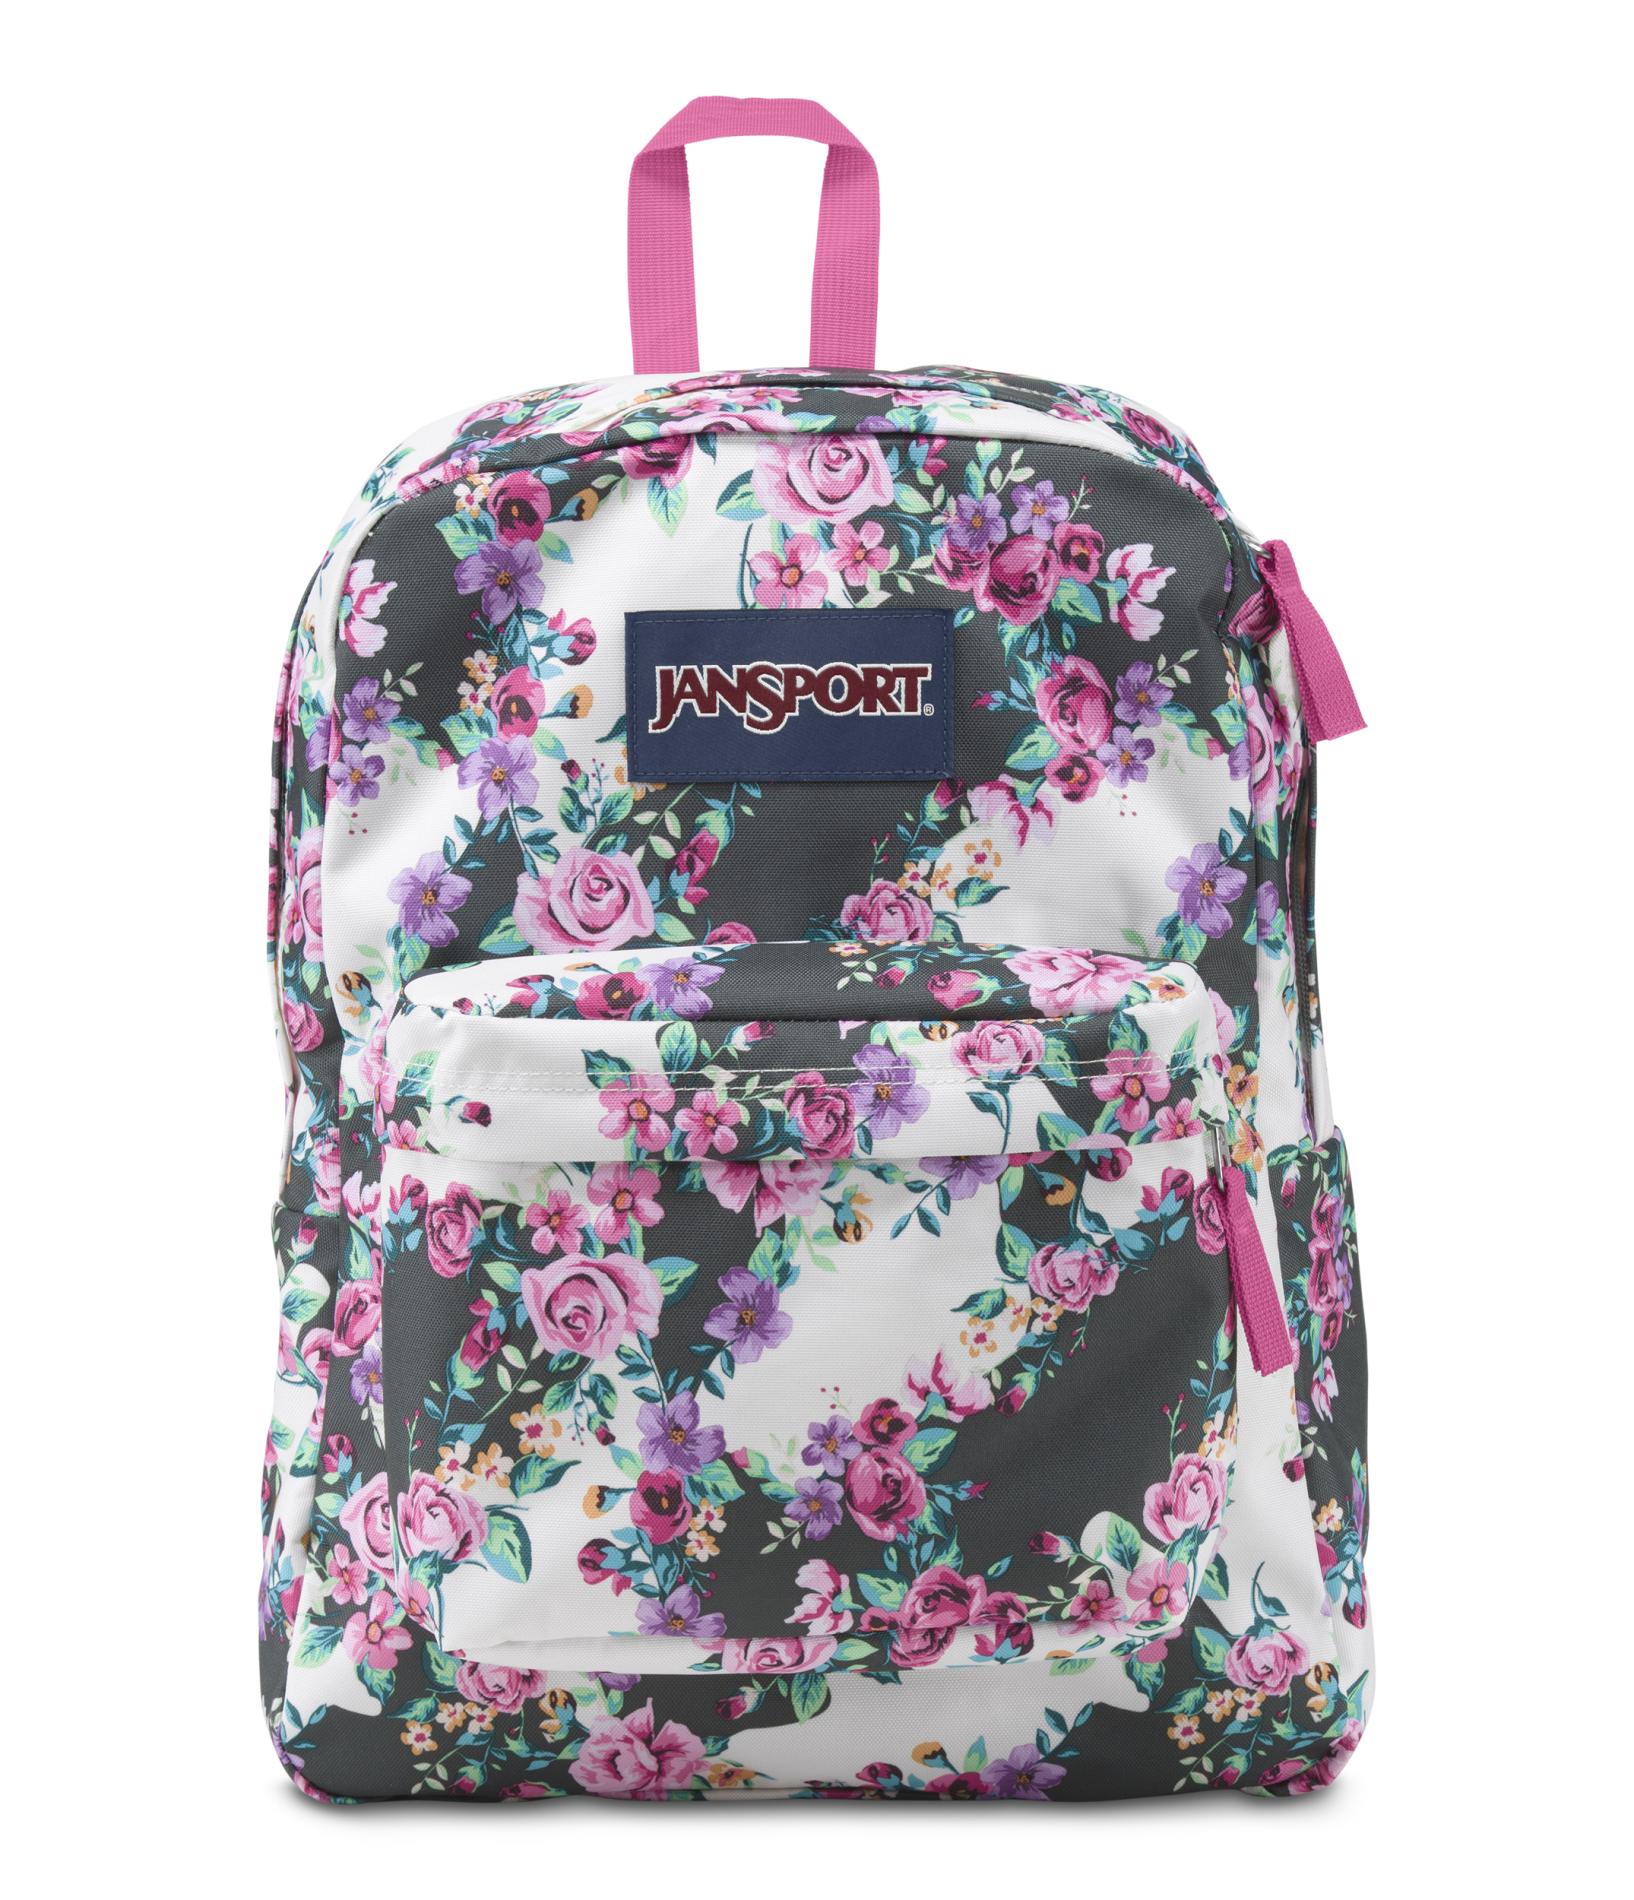 Jansport Floral Backpack HVwftozz